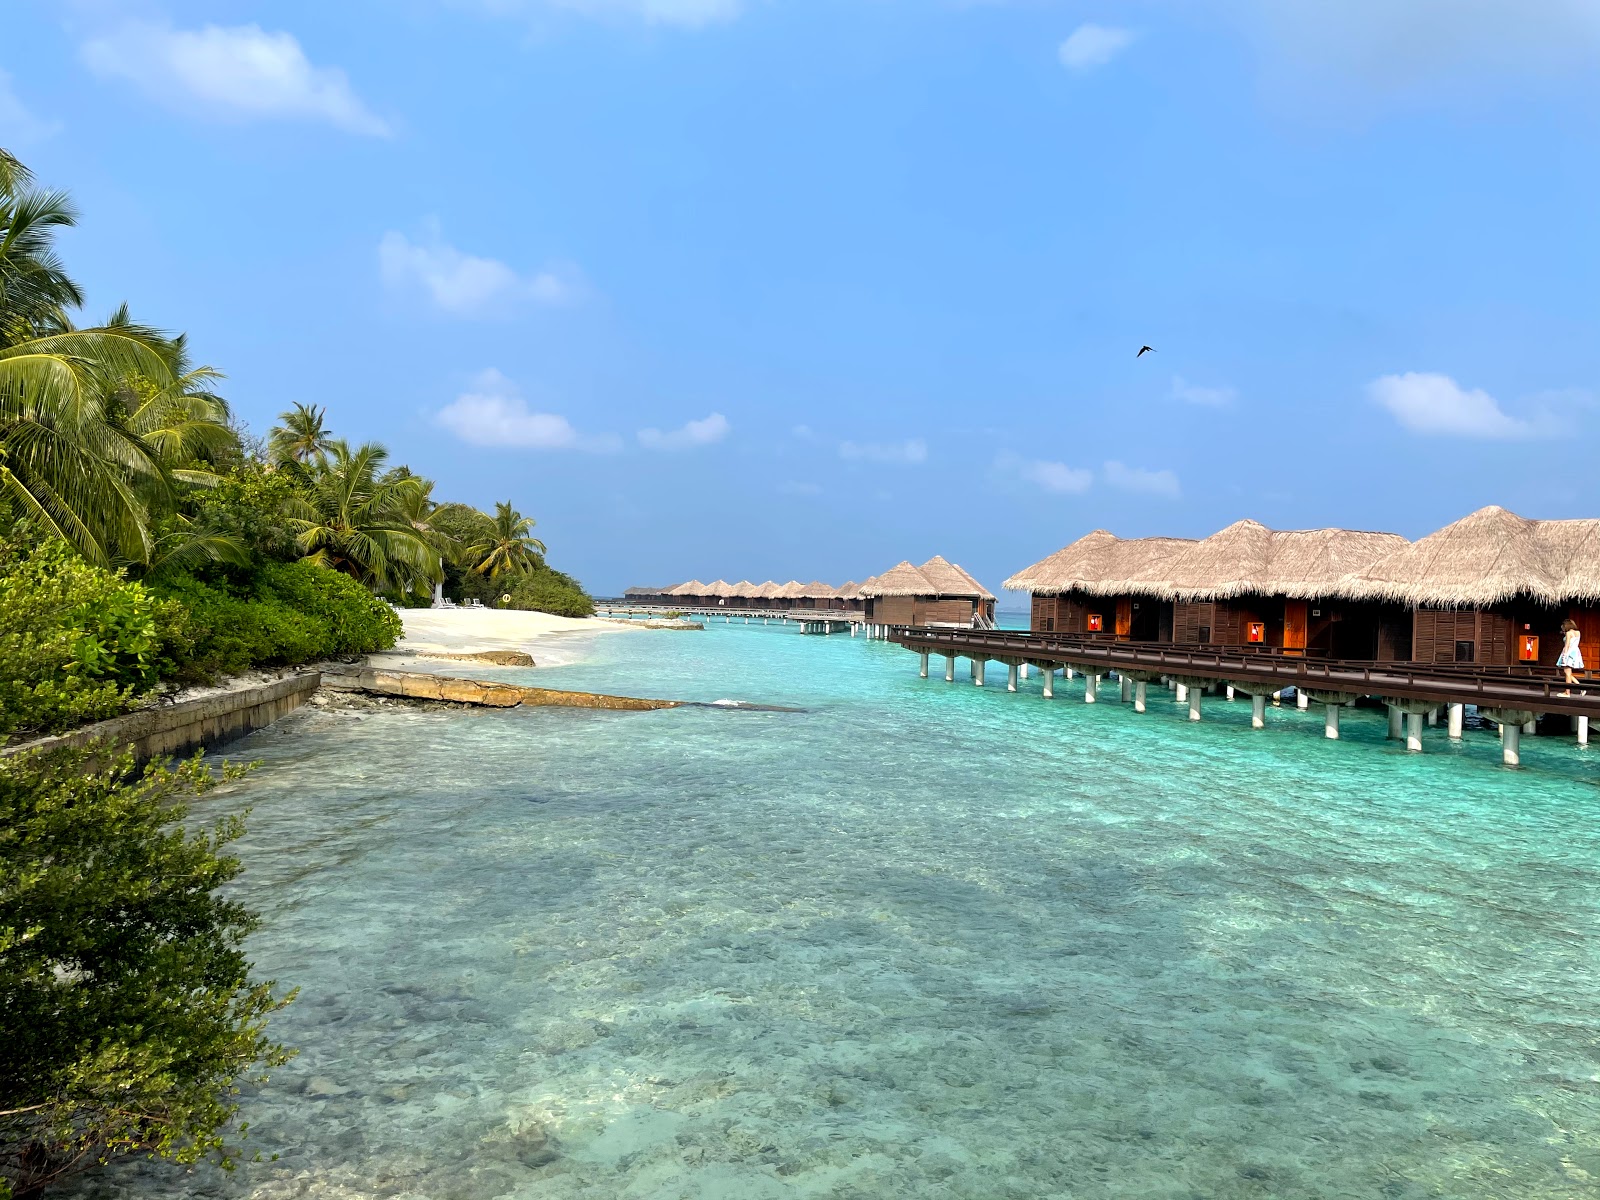 Fotografie cu Sheraton Resort Island - locul popular printre cunoscătorii de relaxare